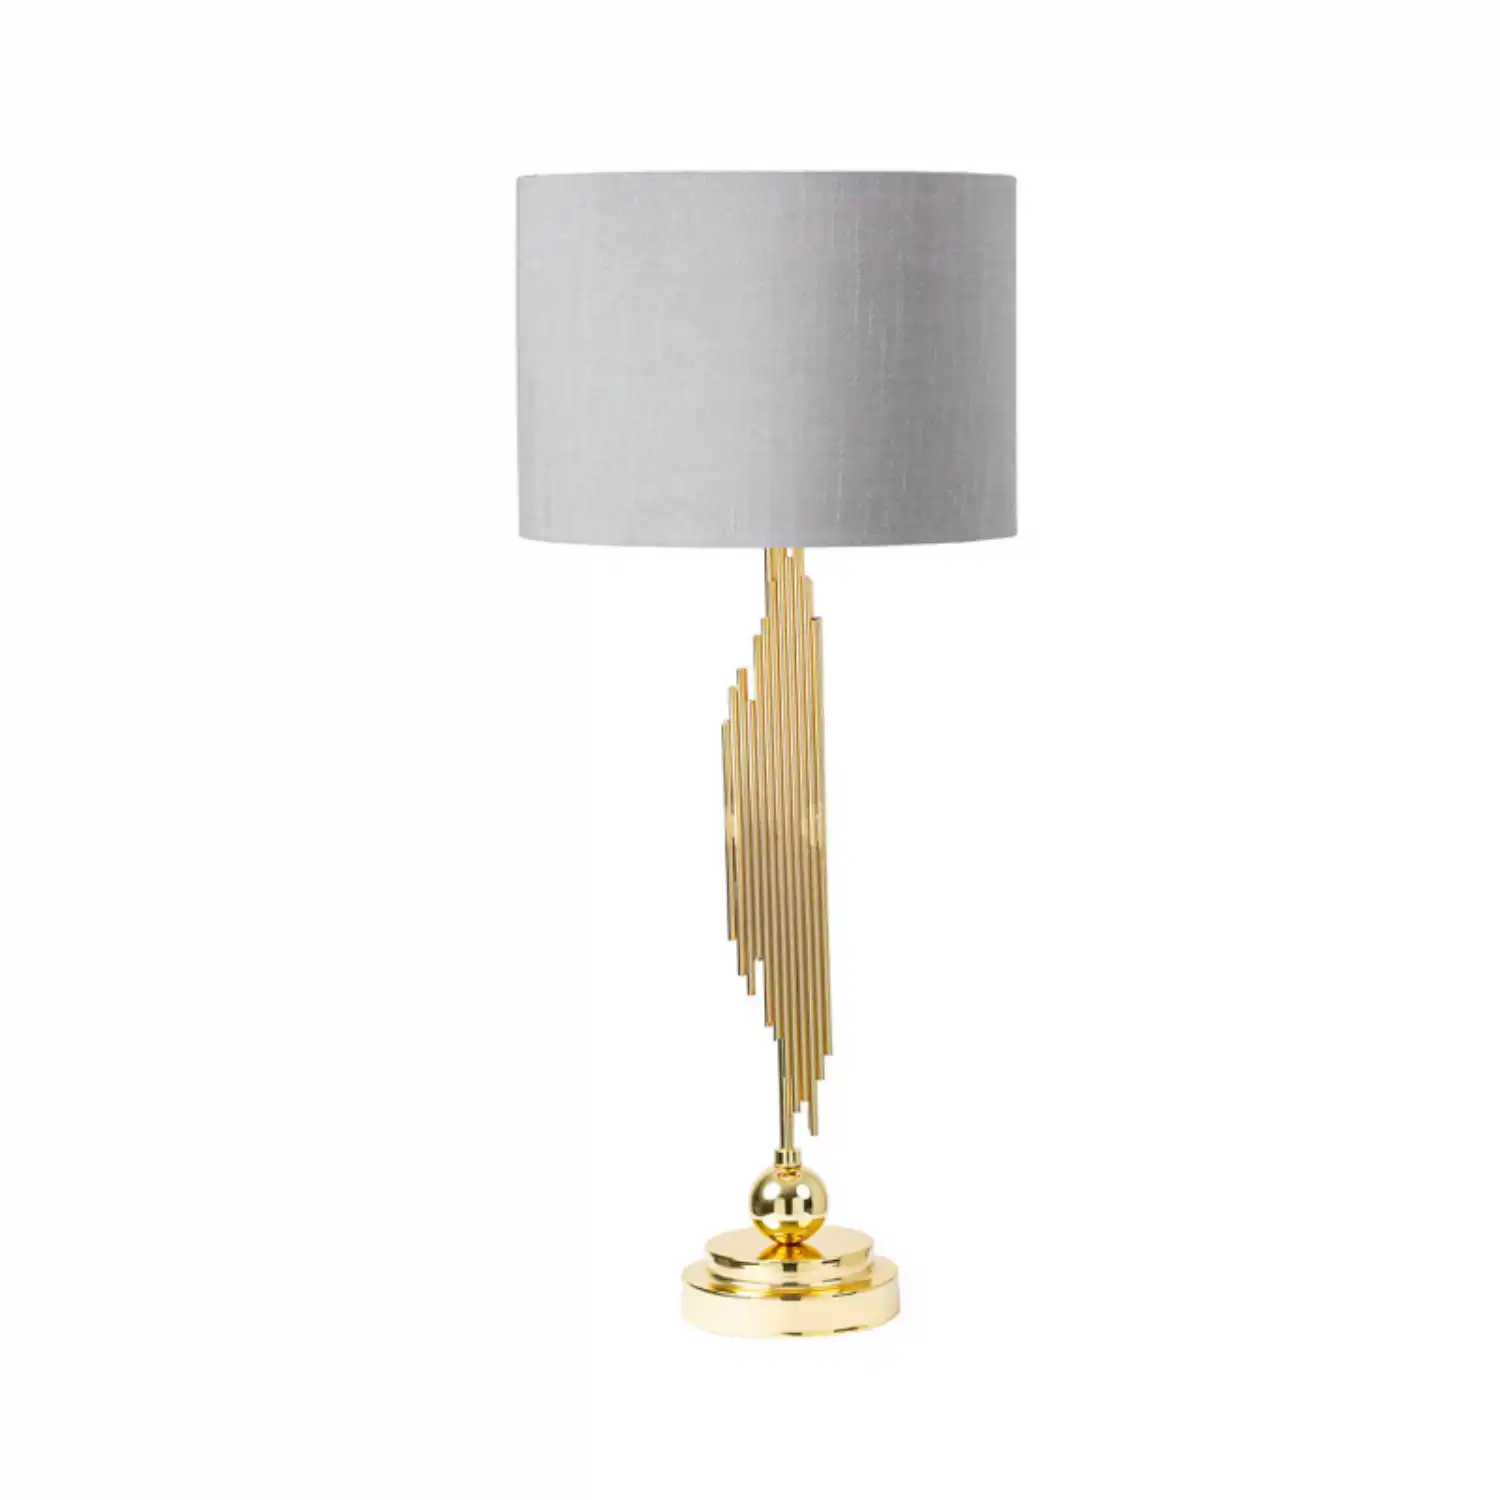 Gold Table Lamp Grey Shade